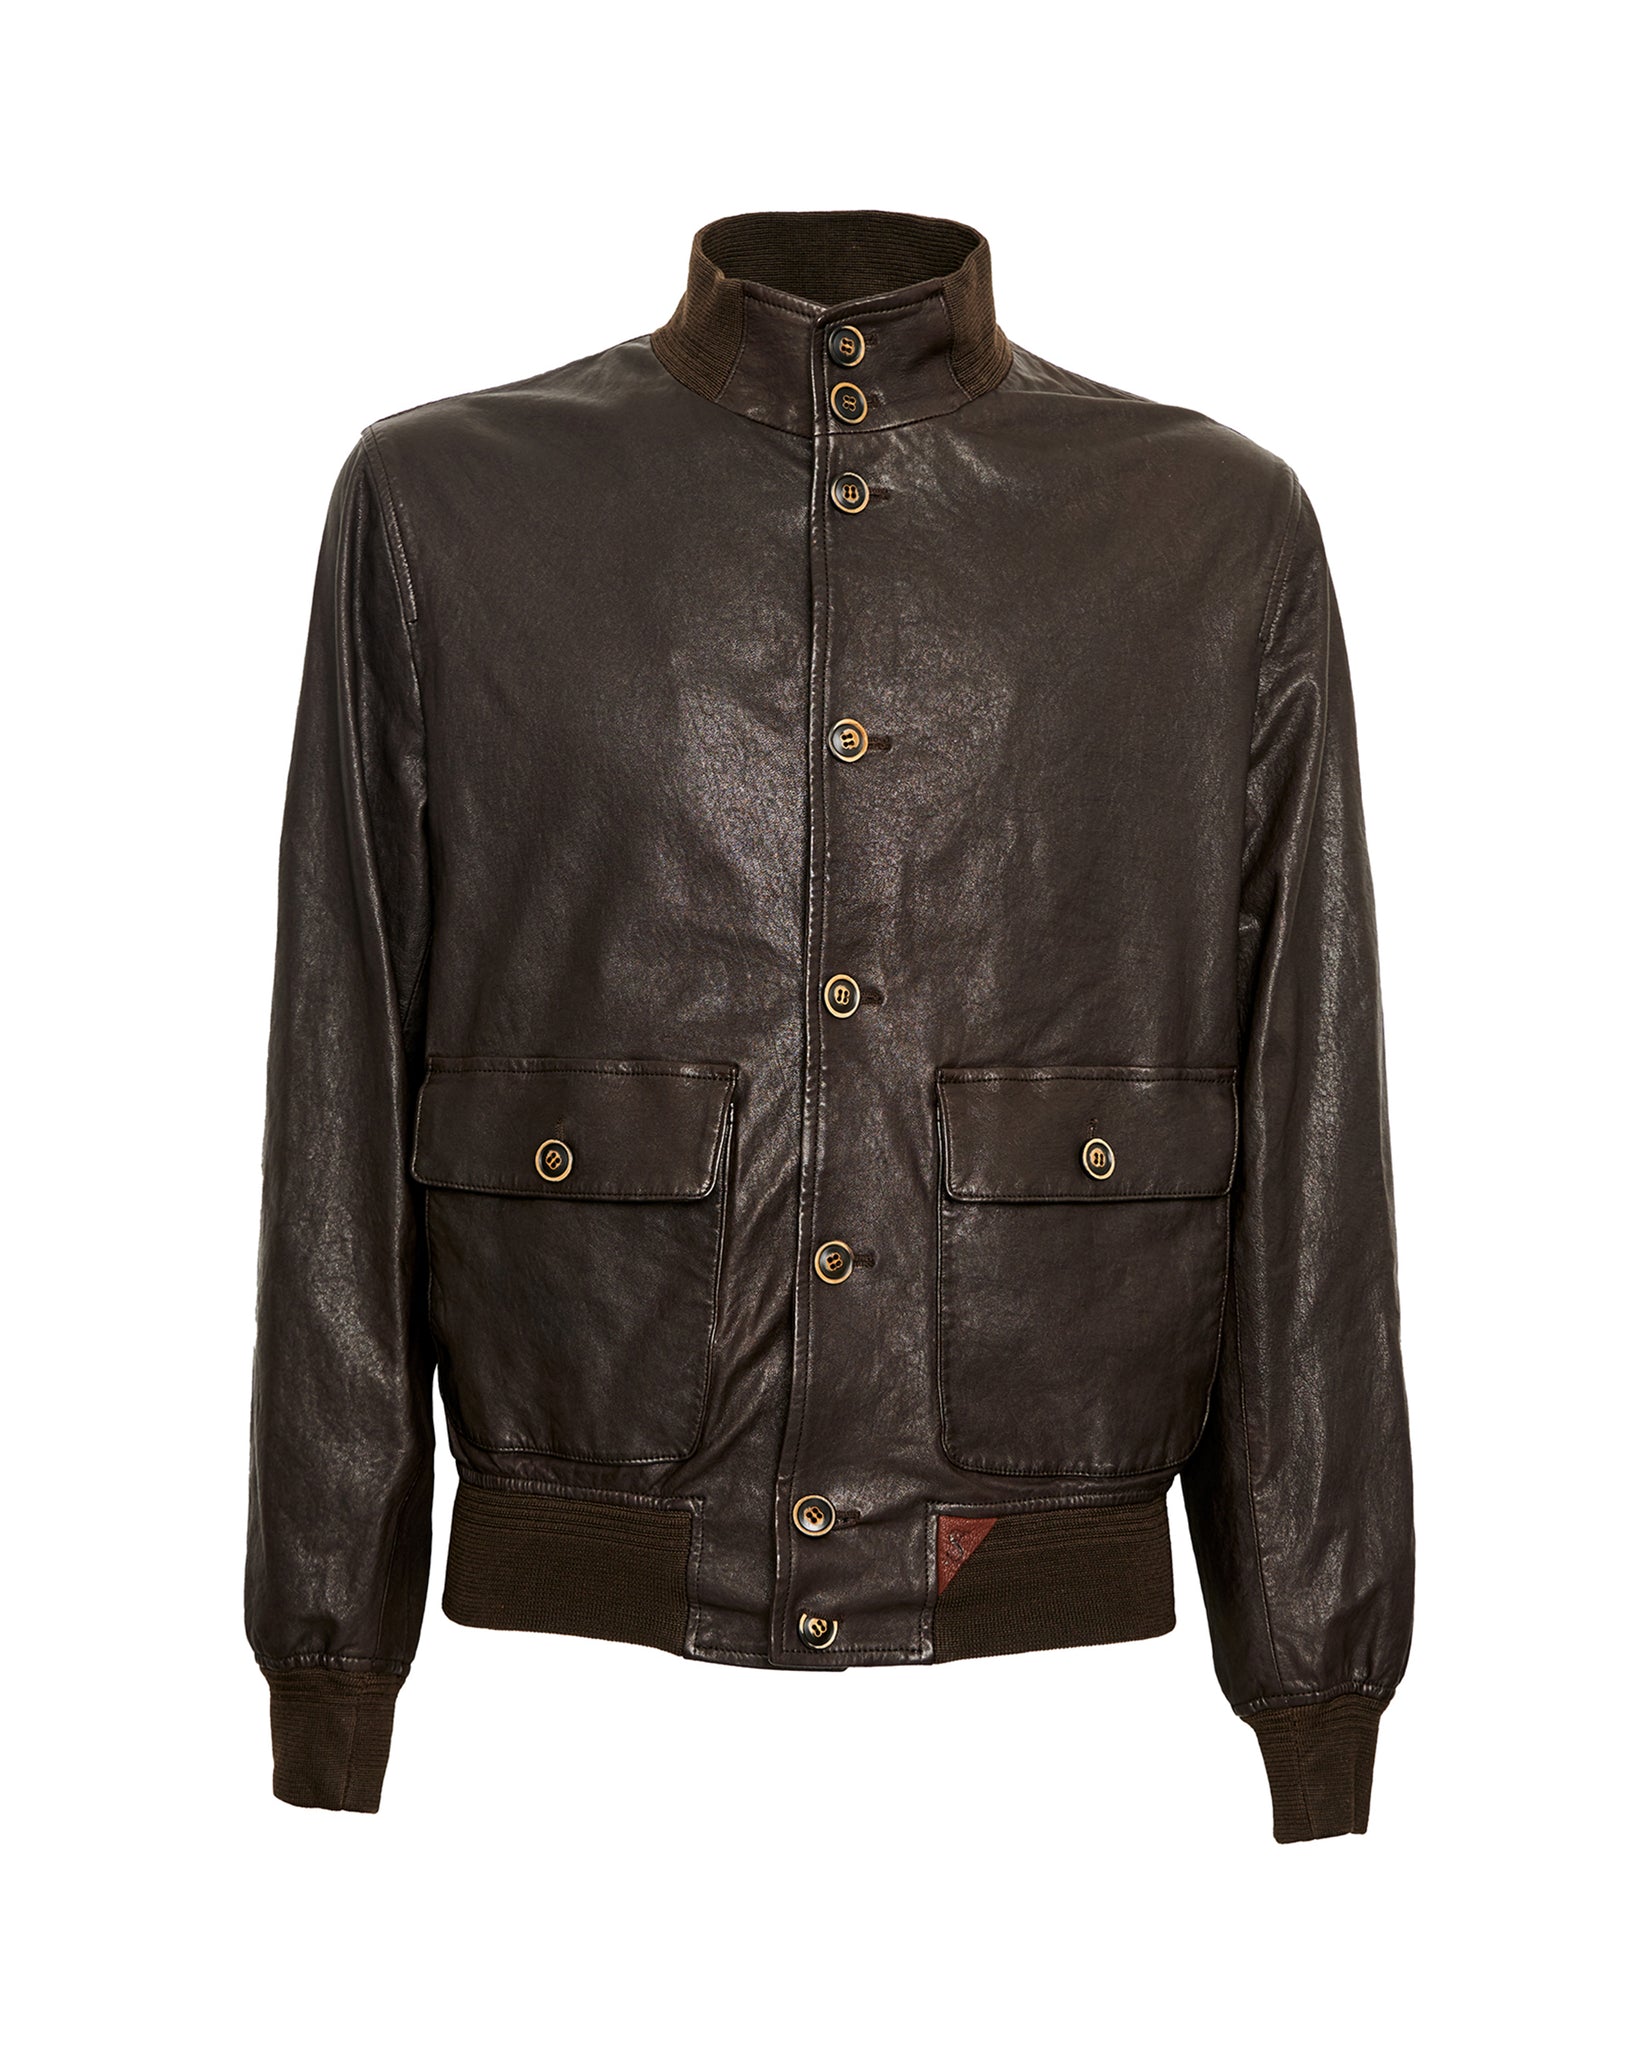 Stewart Premium Italian Leather Jackets– stewartit